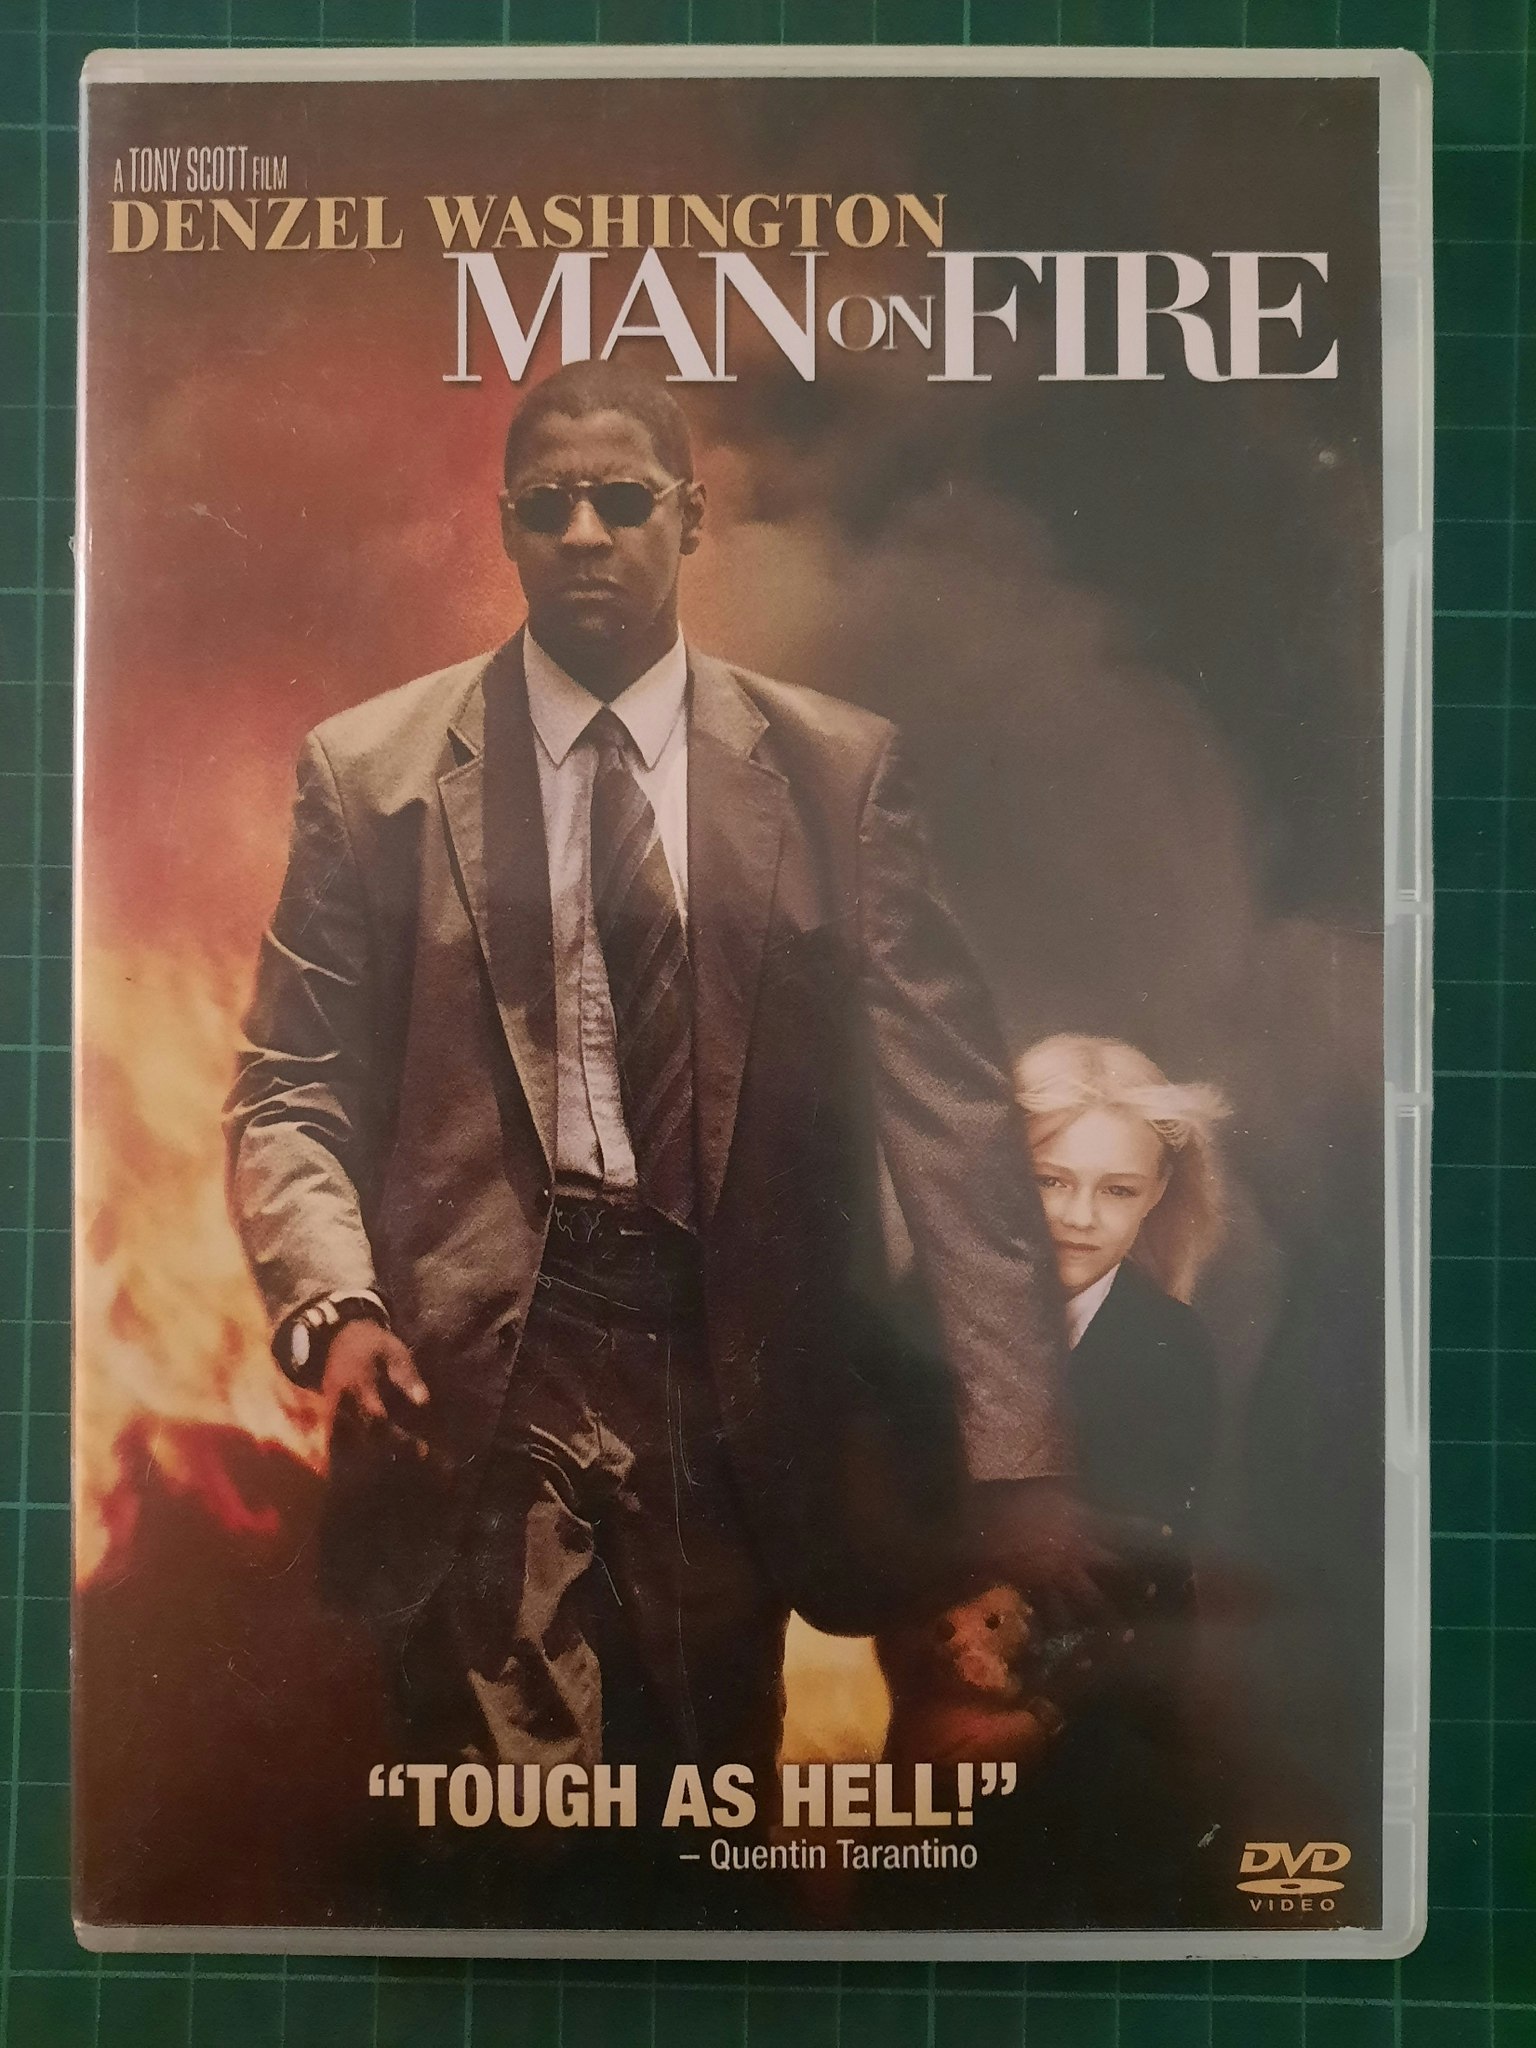 DVD : Man of fire